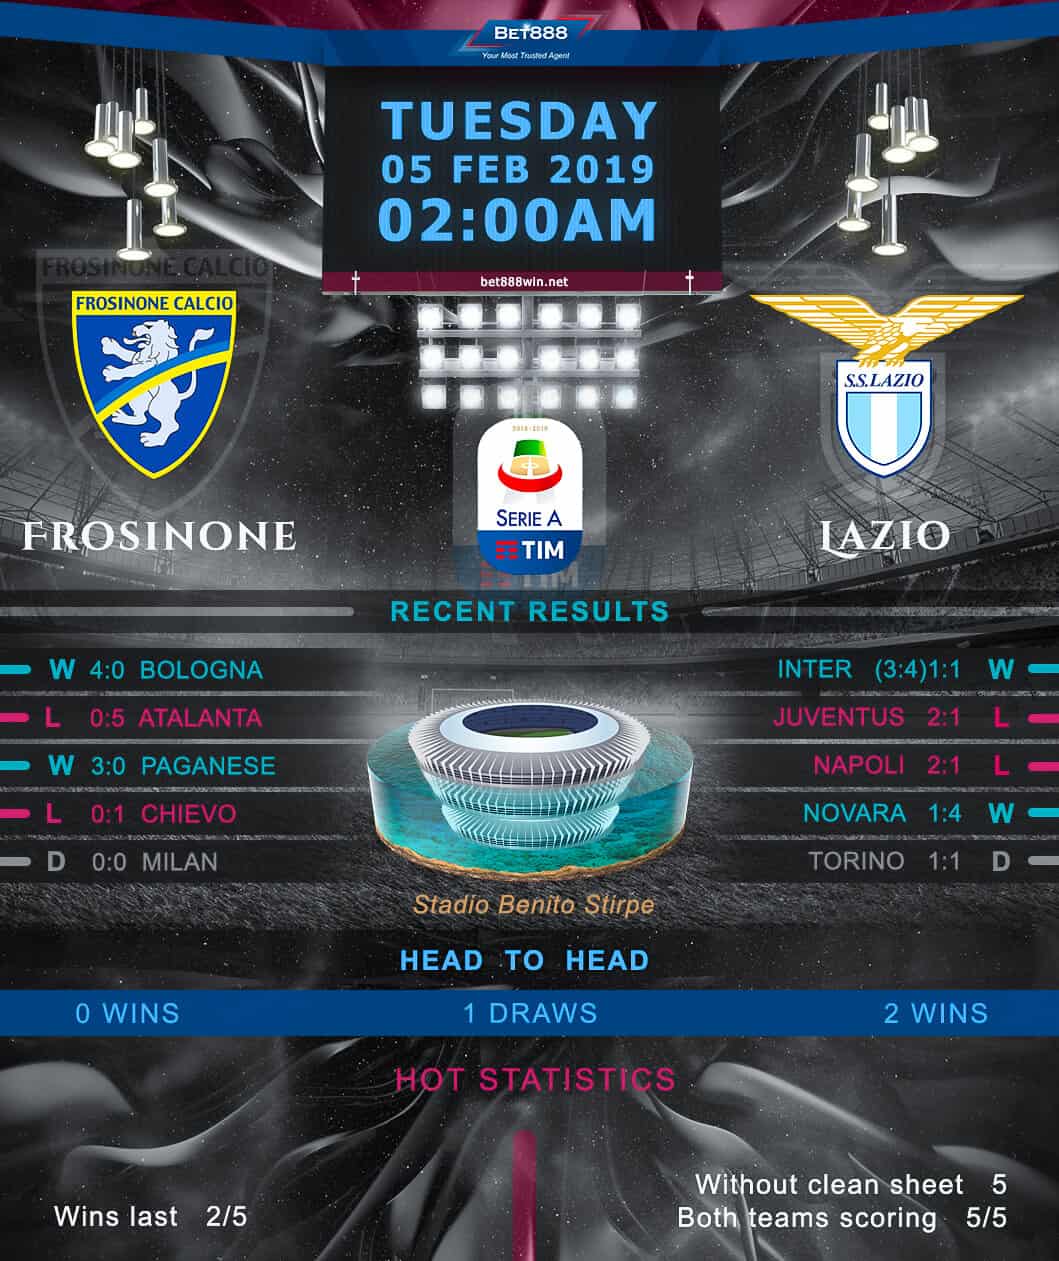 Frosinone vs Lazio﻿ 05/02/19